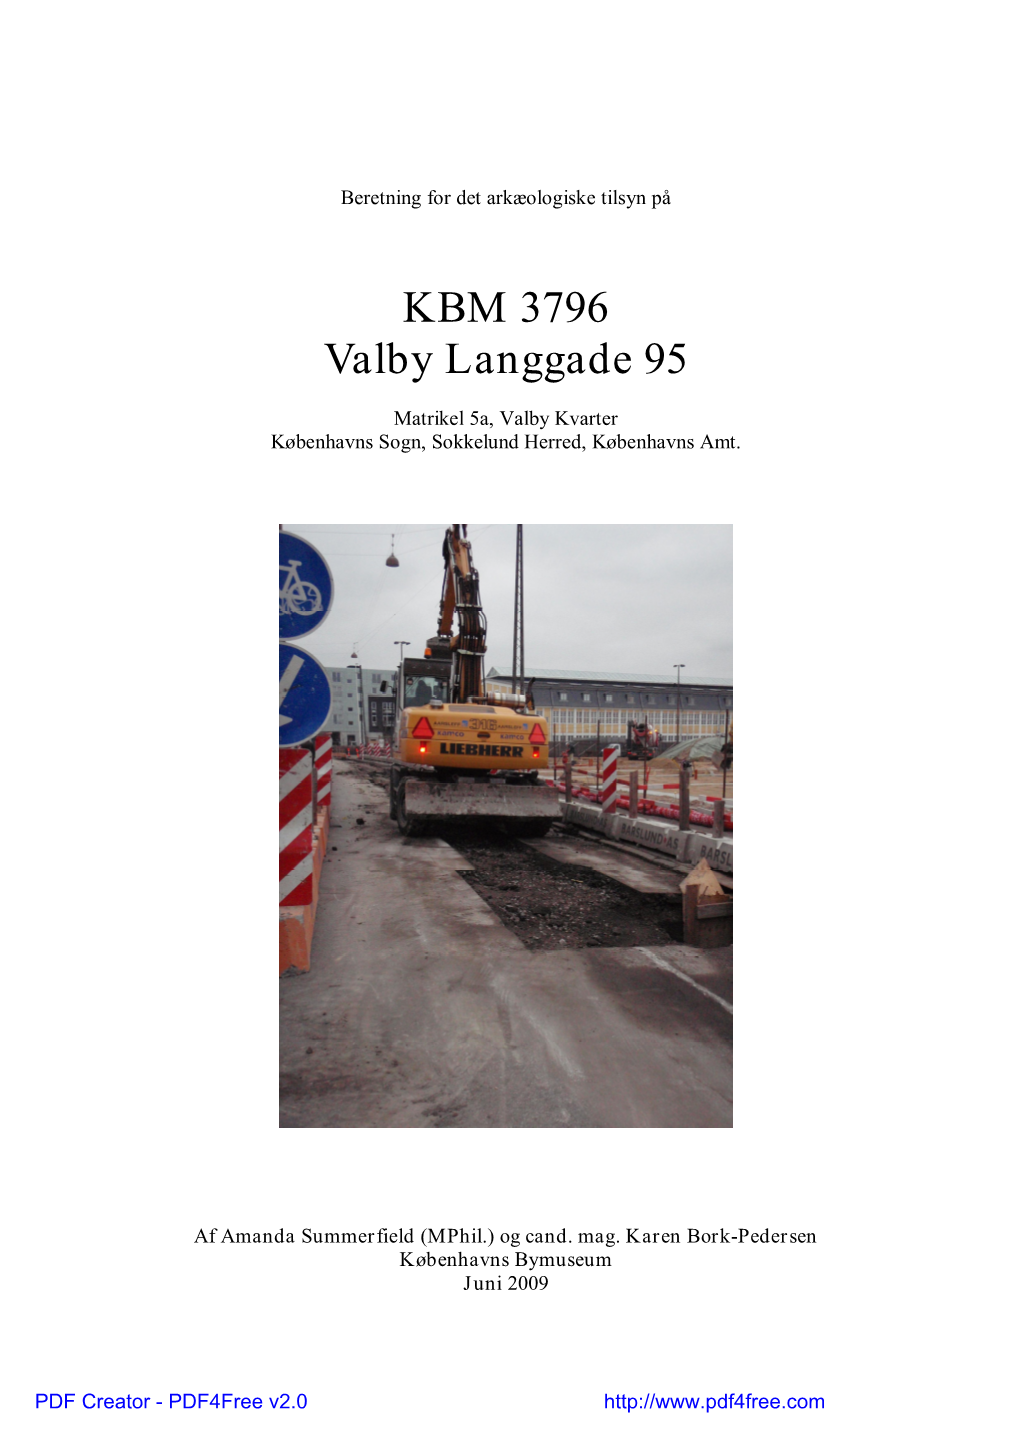 KBM 3796 Valby Langgade 95